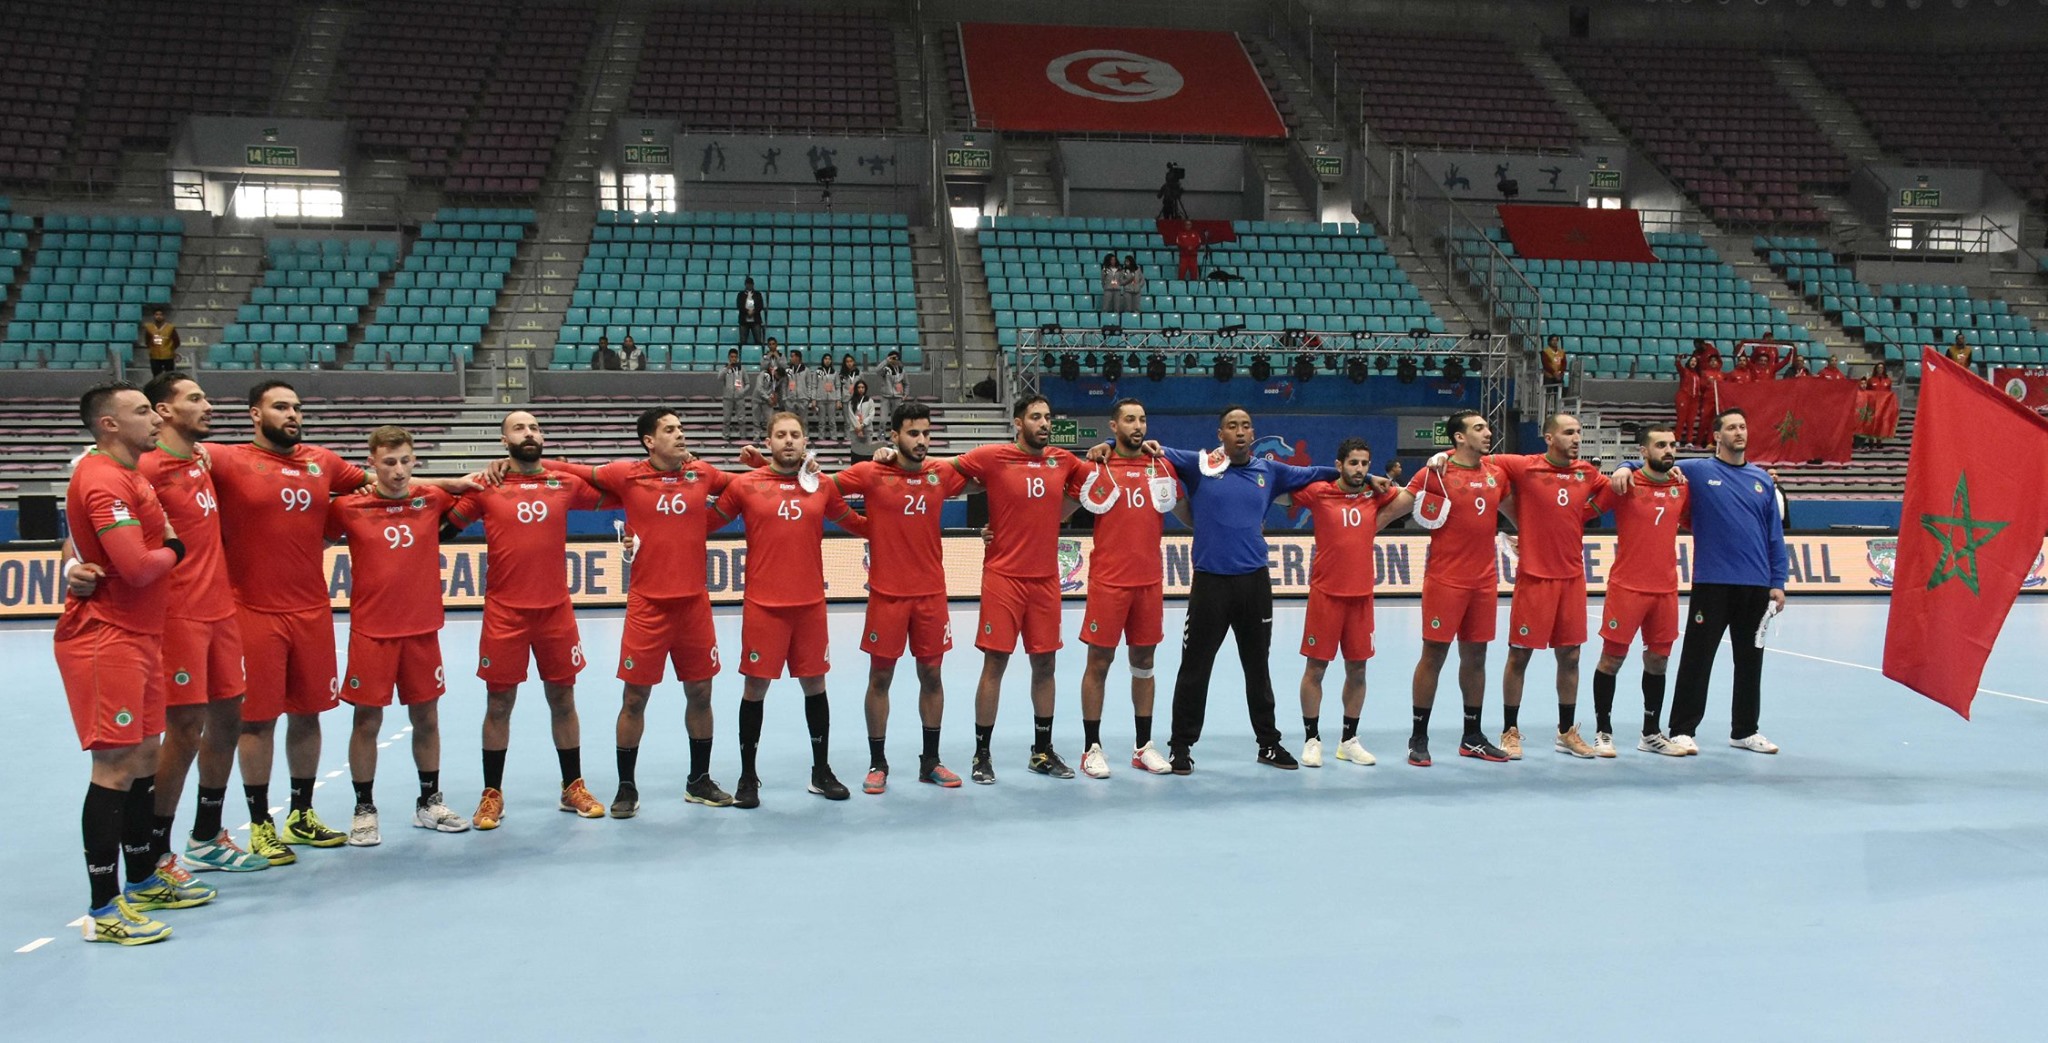 كأس افريقيا لكرة اليد: المنتخب الوطني المغربي ينهزم أمام الجزائر